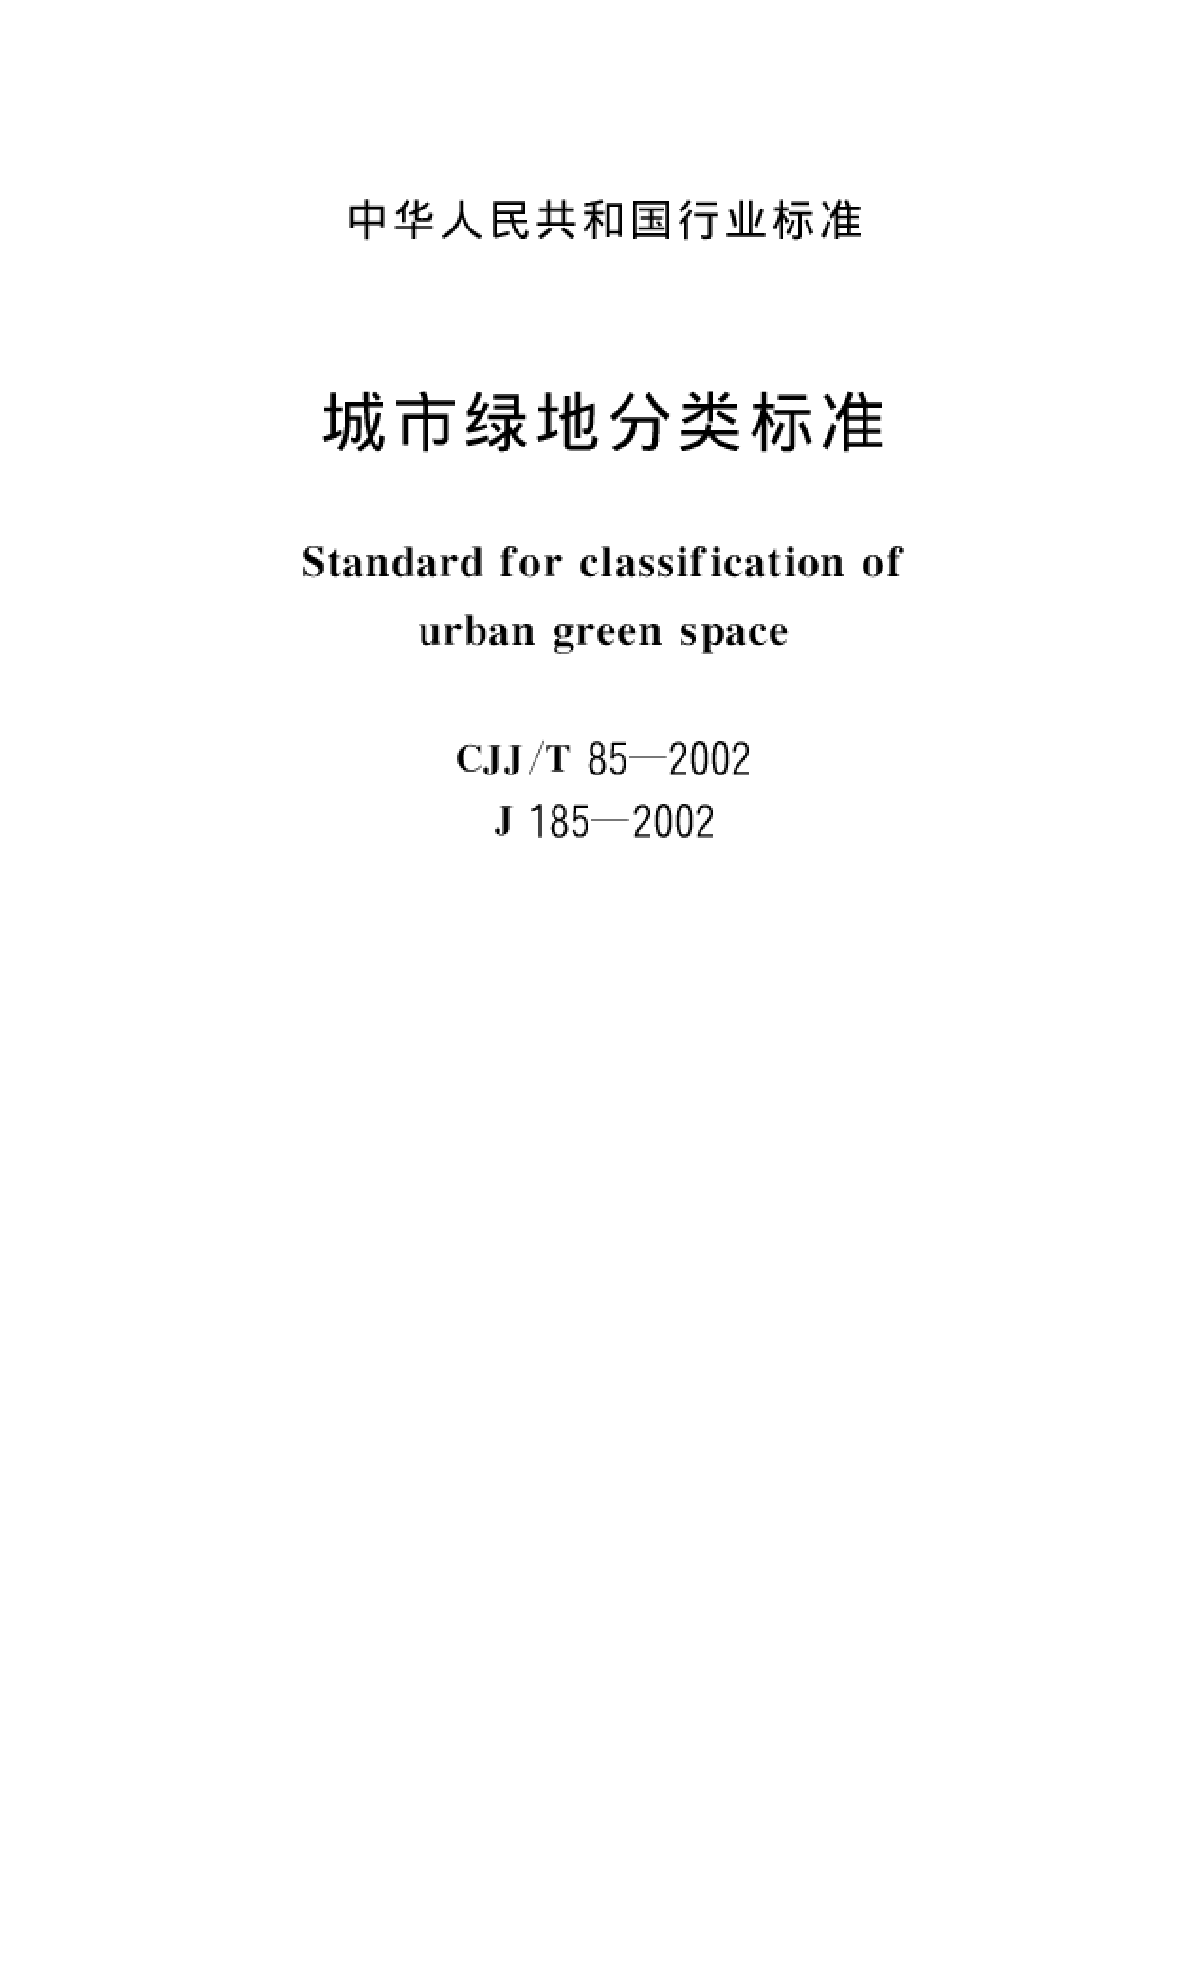 CJJ85T-2002 城市绿地分类标准